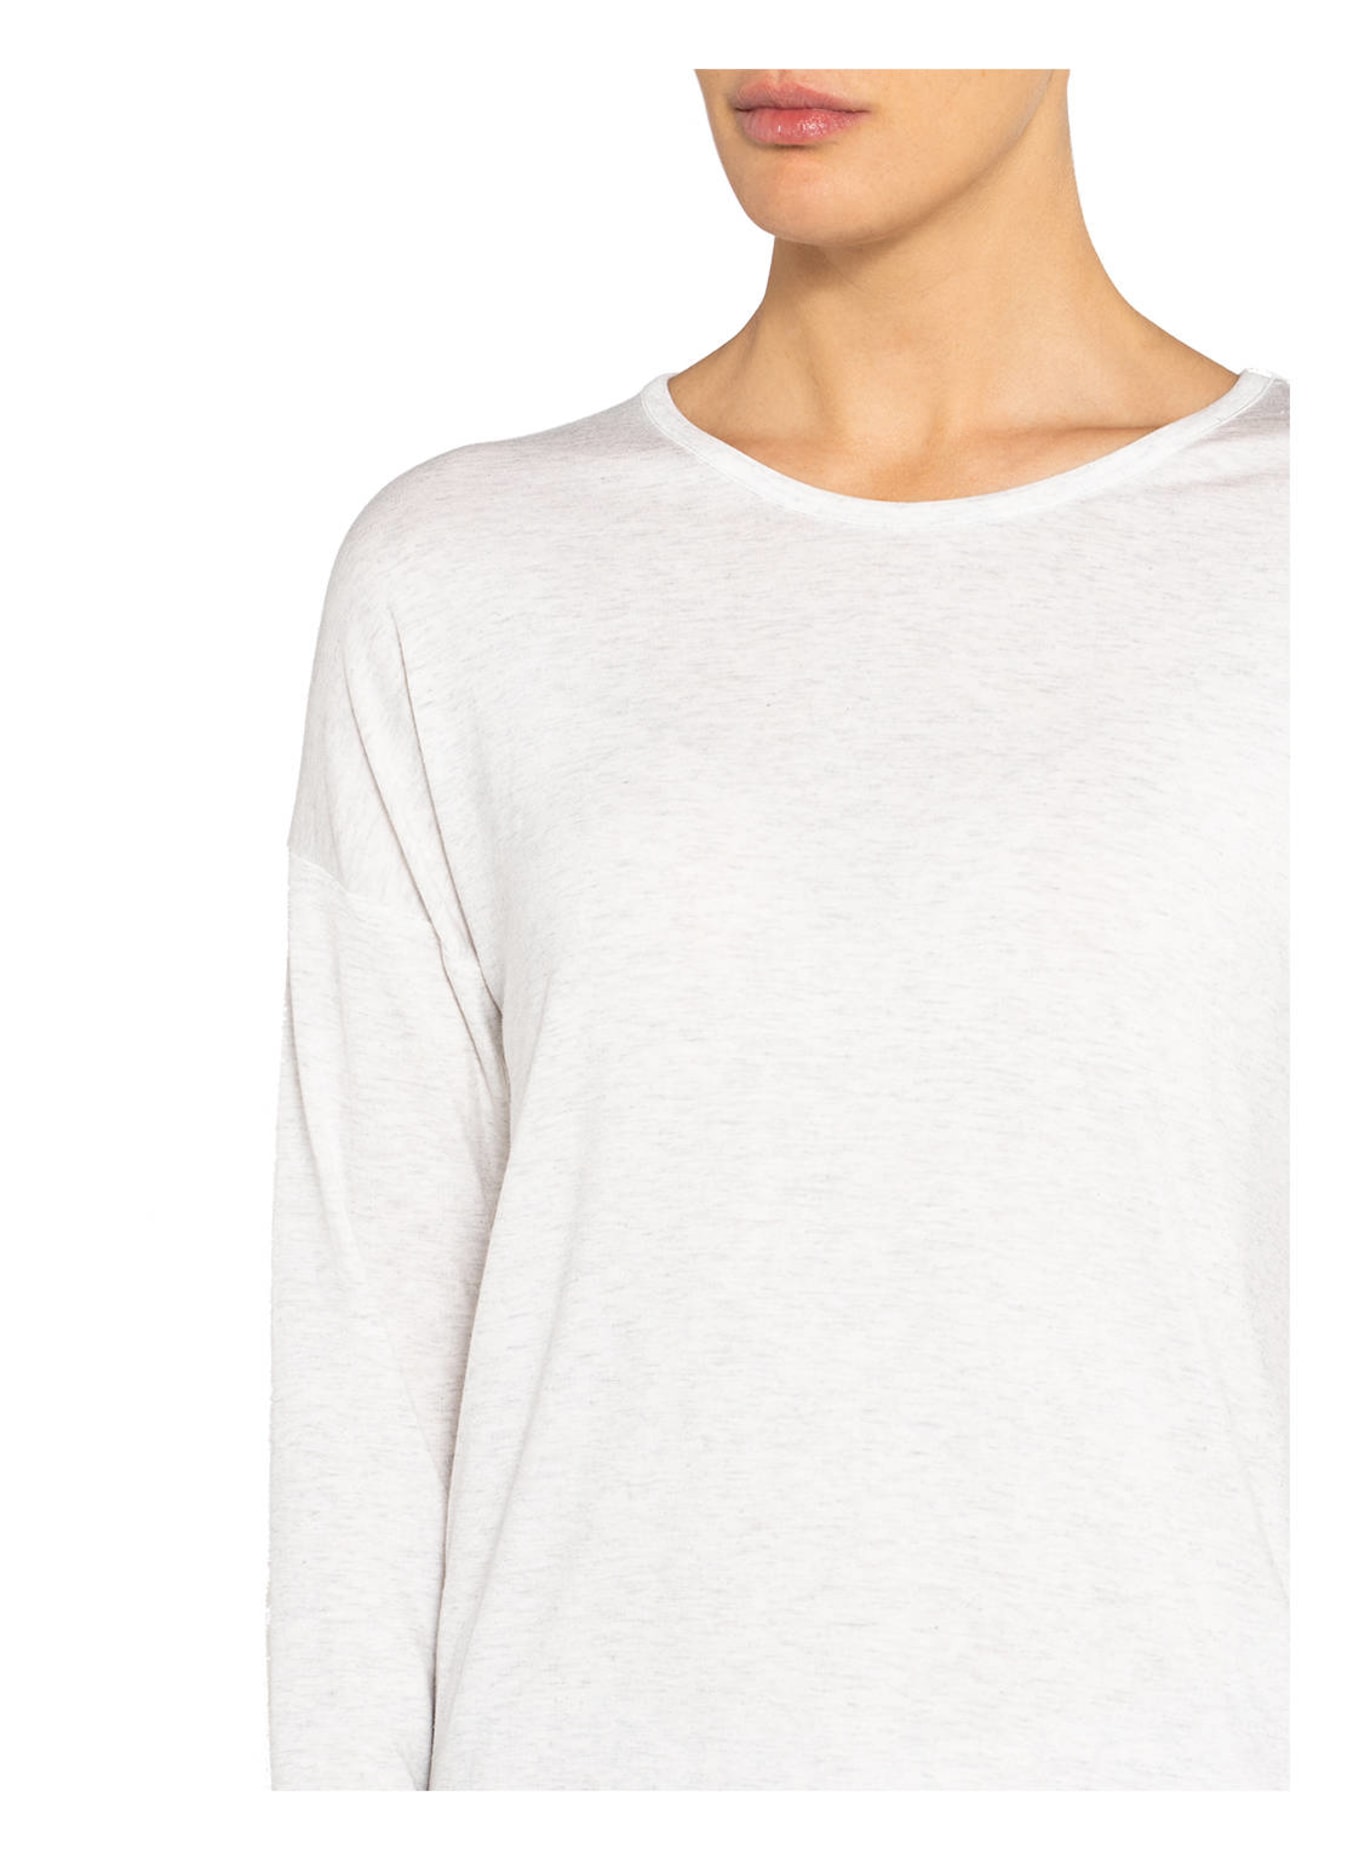 JOCKEY Lounge-Shirt SUPERSOFT LOUNGE, Farbe: WEISS (Bild 4)